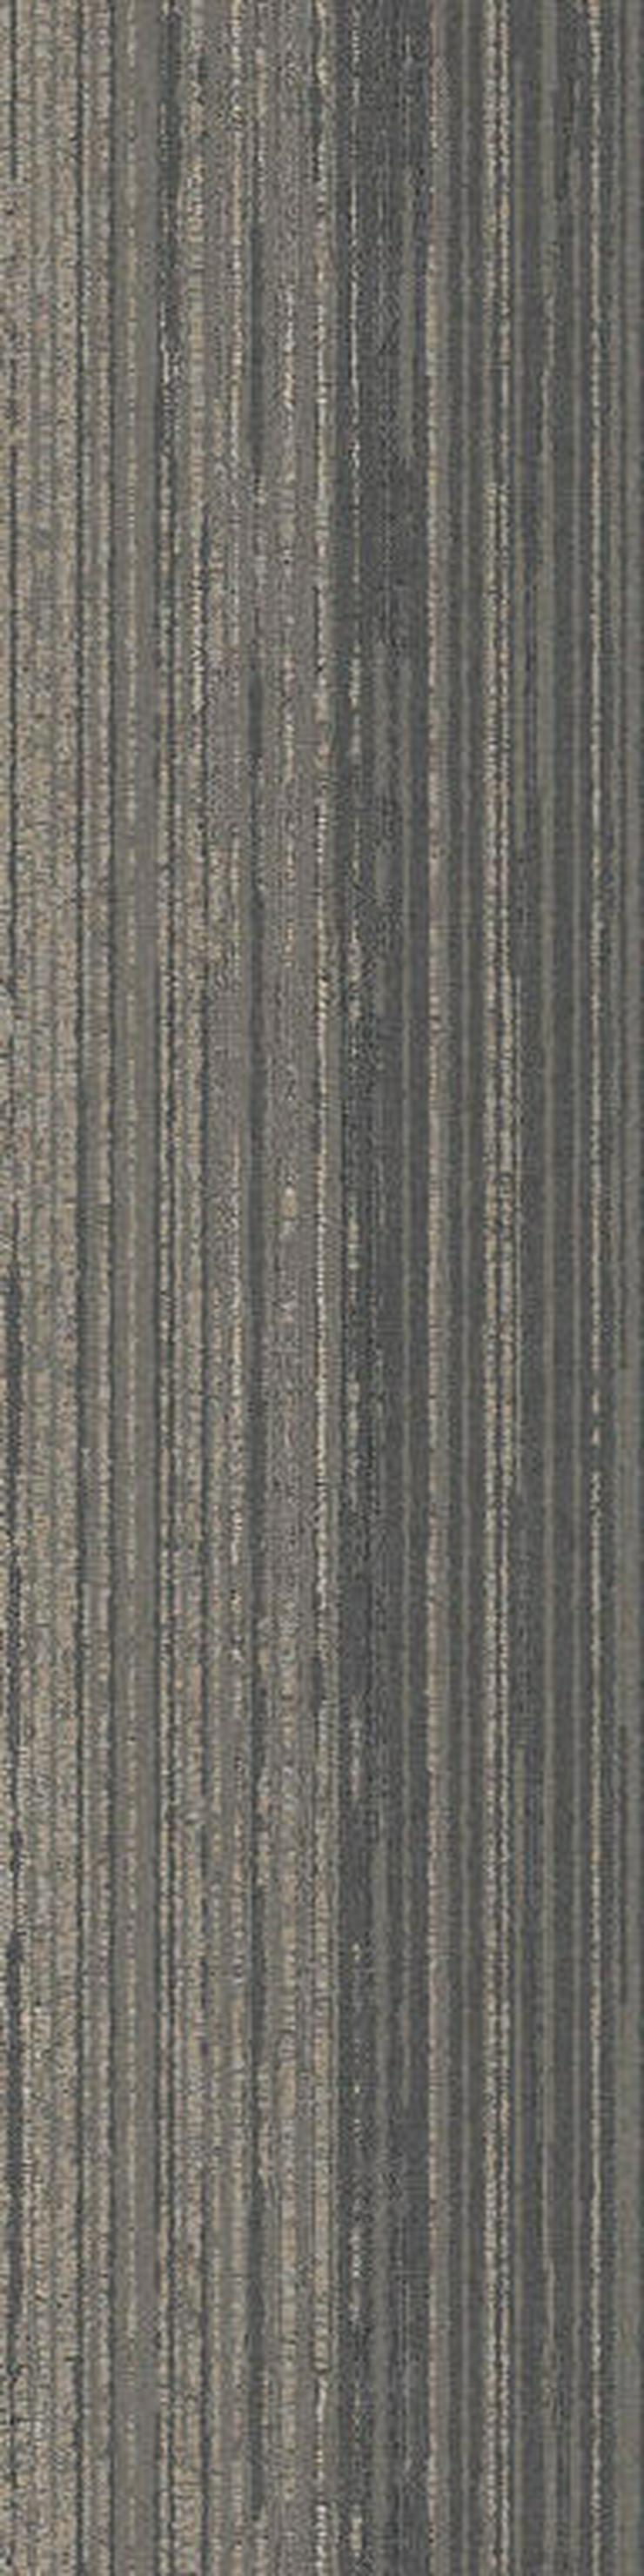 Schöne 25X100cm Teppichfliesen Mehrere Farben - Teppiche - Bild 8